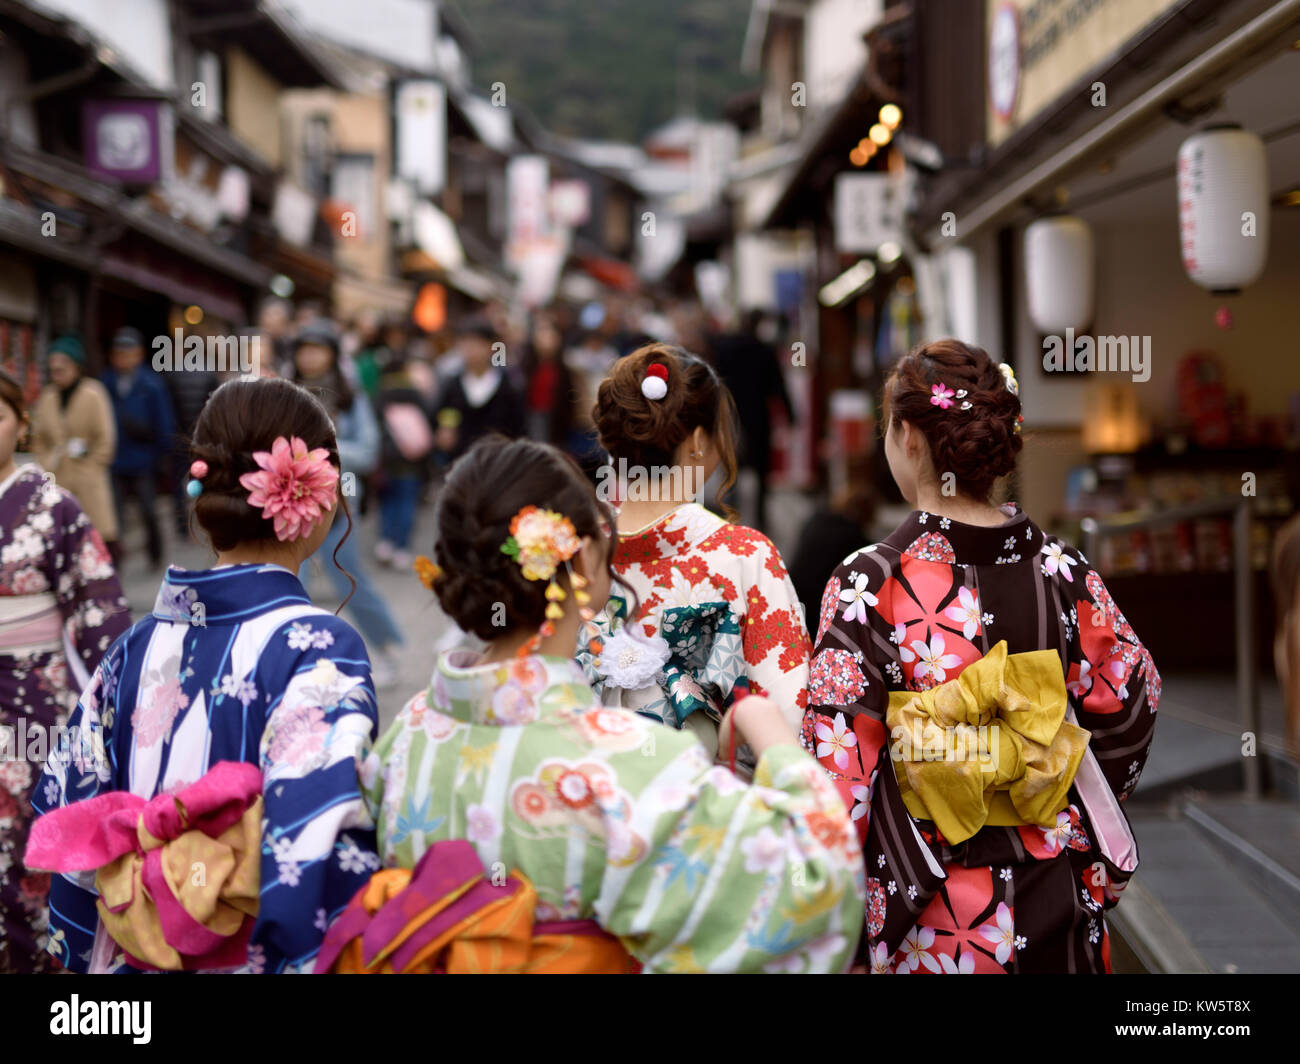 Führerschein und Fingerabdrücke bei MaximImages.com - Mädchen in leuchtenden Yukata Kimonos, deren obi gefesselt ist, als sie die Yasaka dori Street in Kyoto entlang laufen Stockfoto